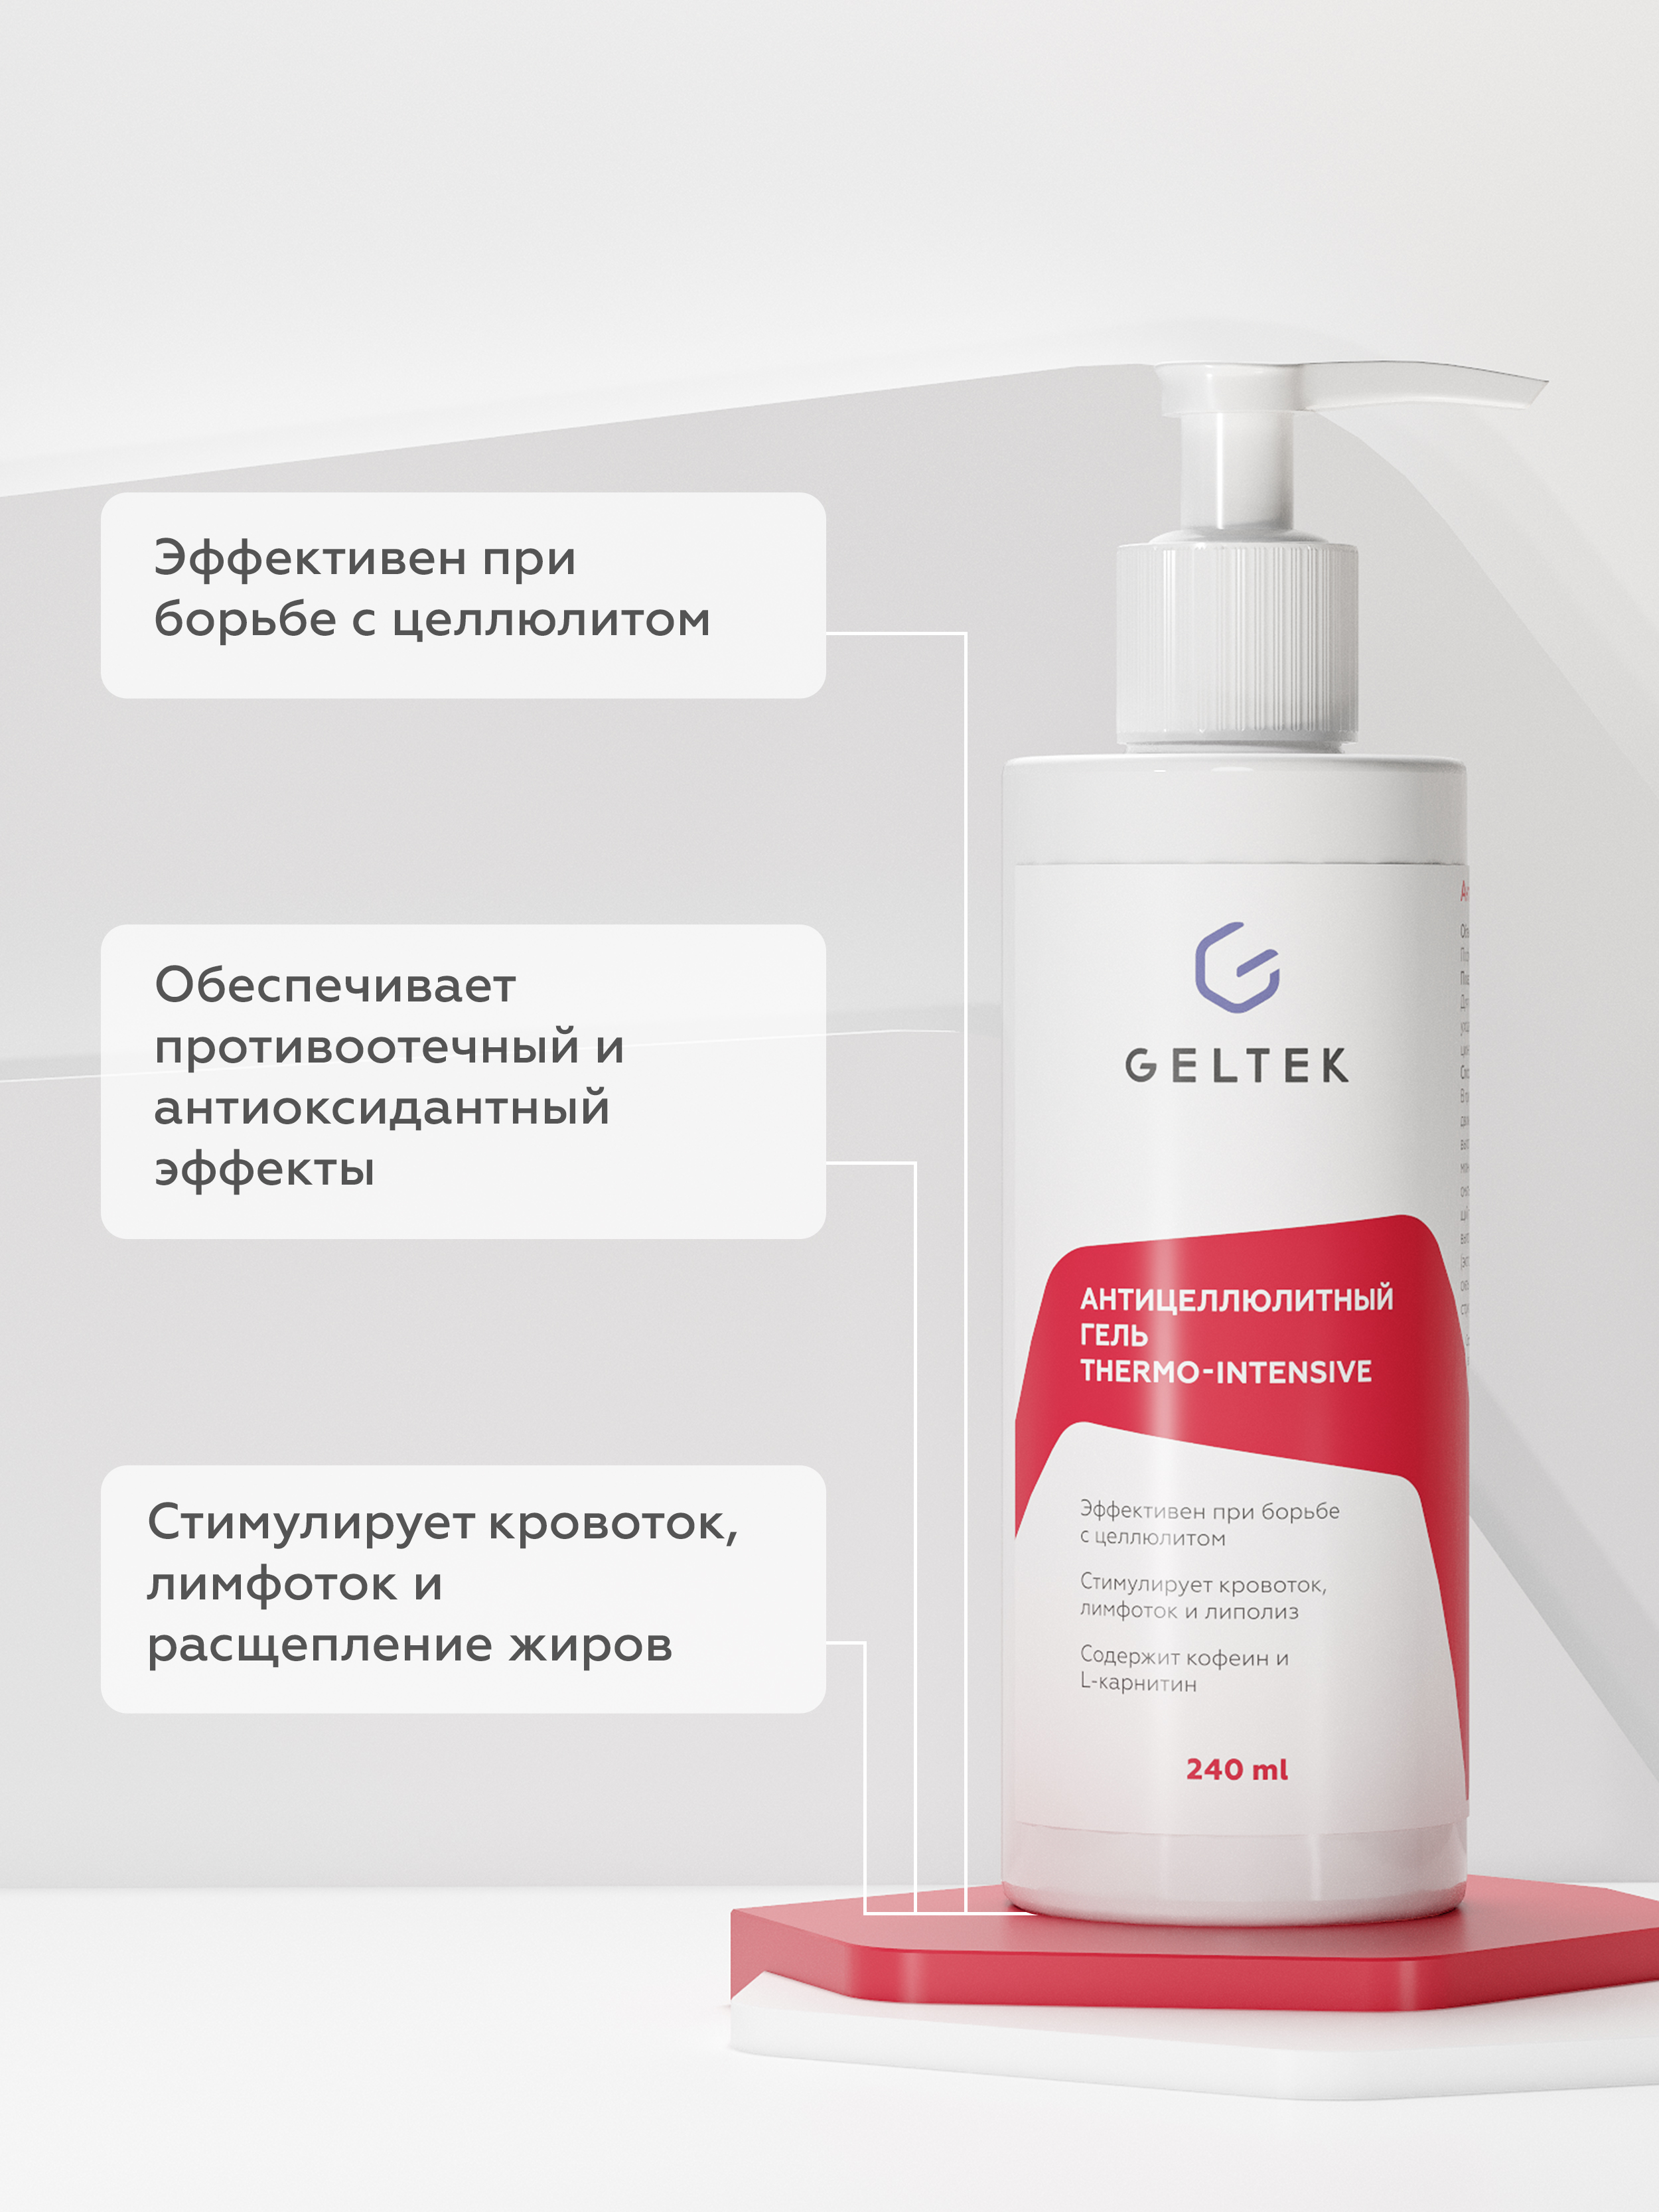 Гель для тела Geltek Thermo-Intensive антицеллюлитный 240мл - в интернет-магазине tut-beauty.by